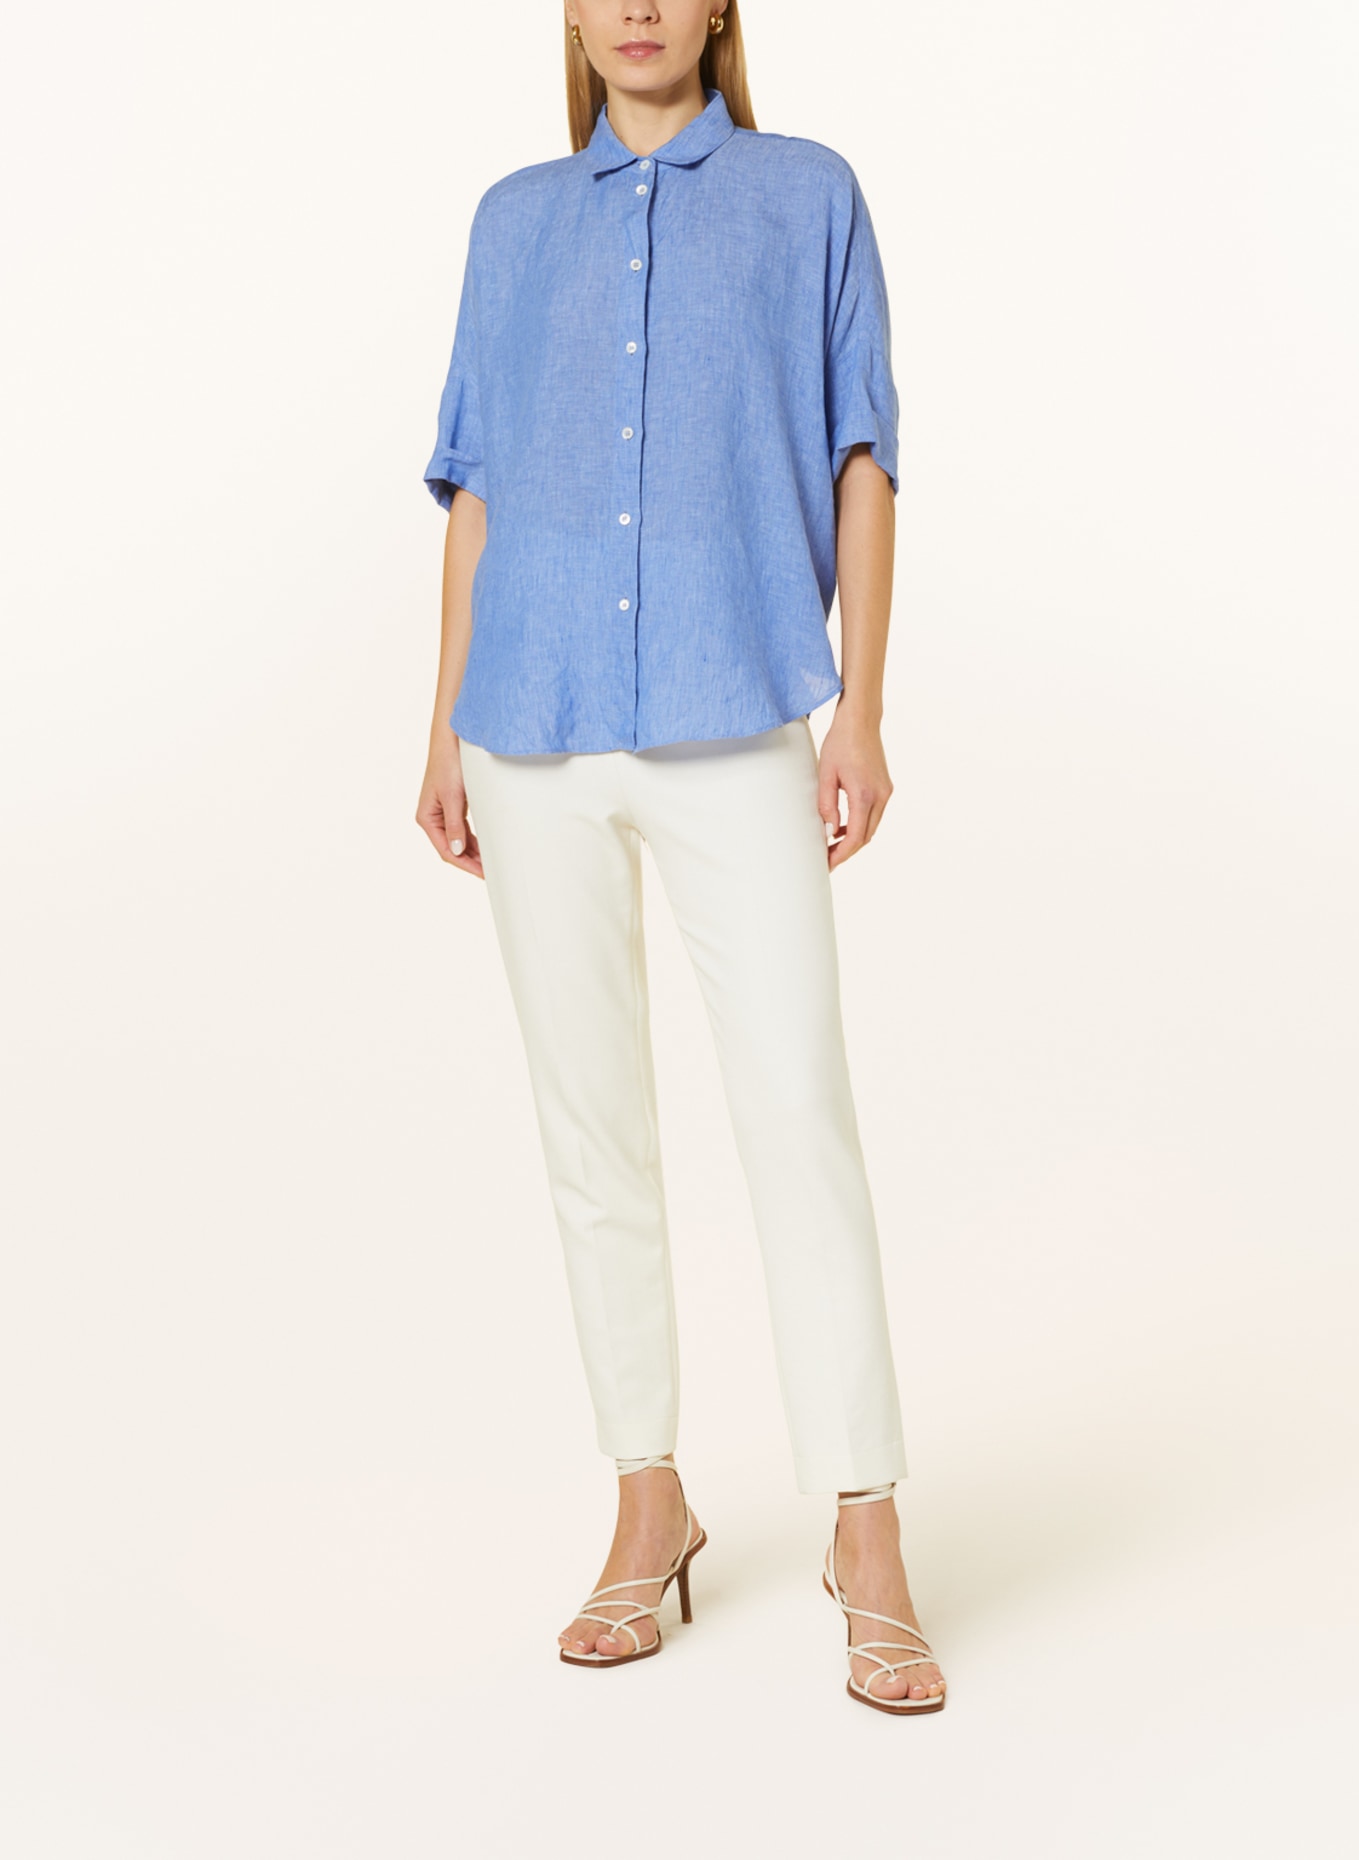 ROBERT FRIEDMAN Shirt blouse BIANCAL made of linen, Color: LIGHT BLUE (Image 2)